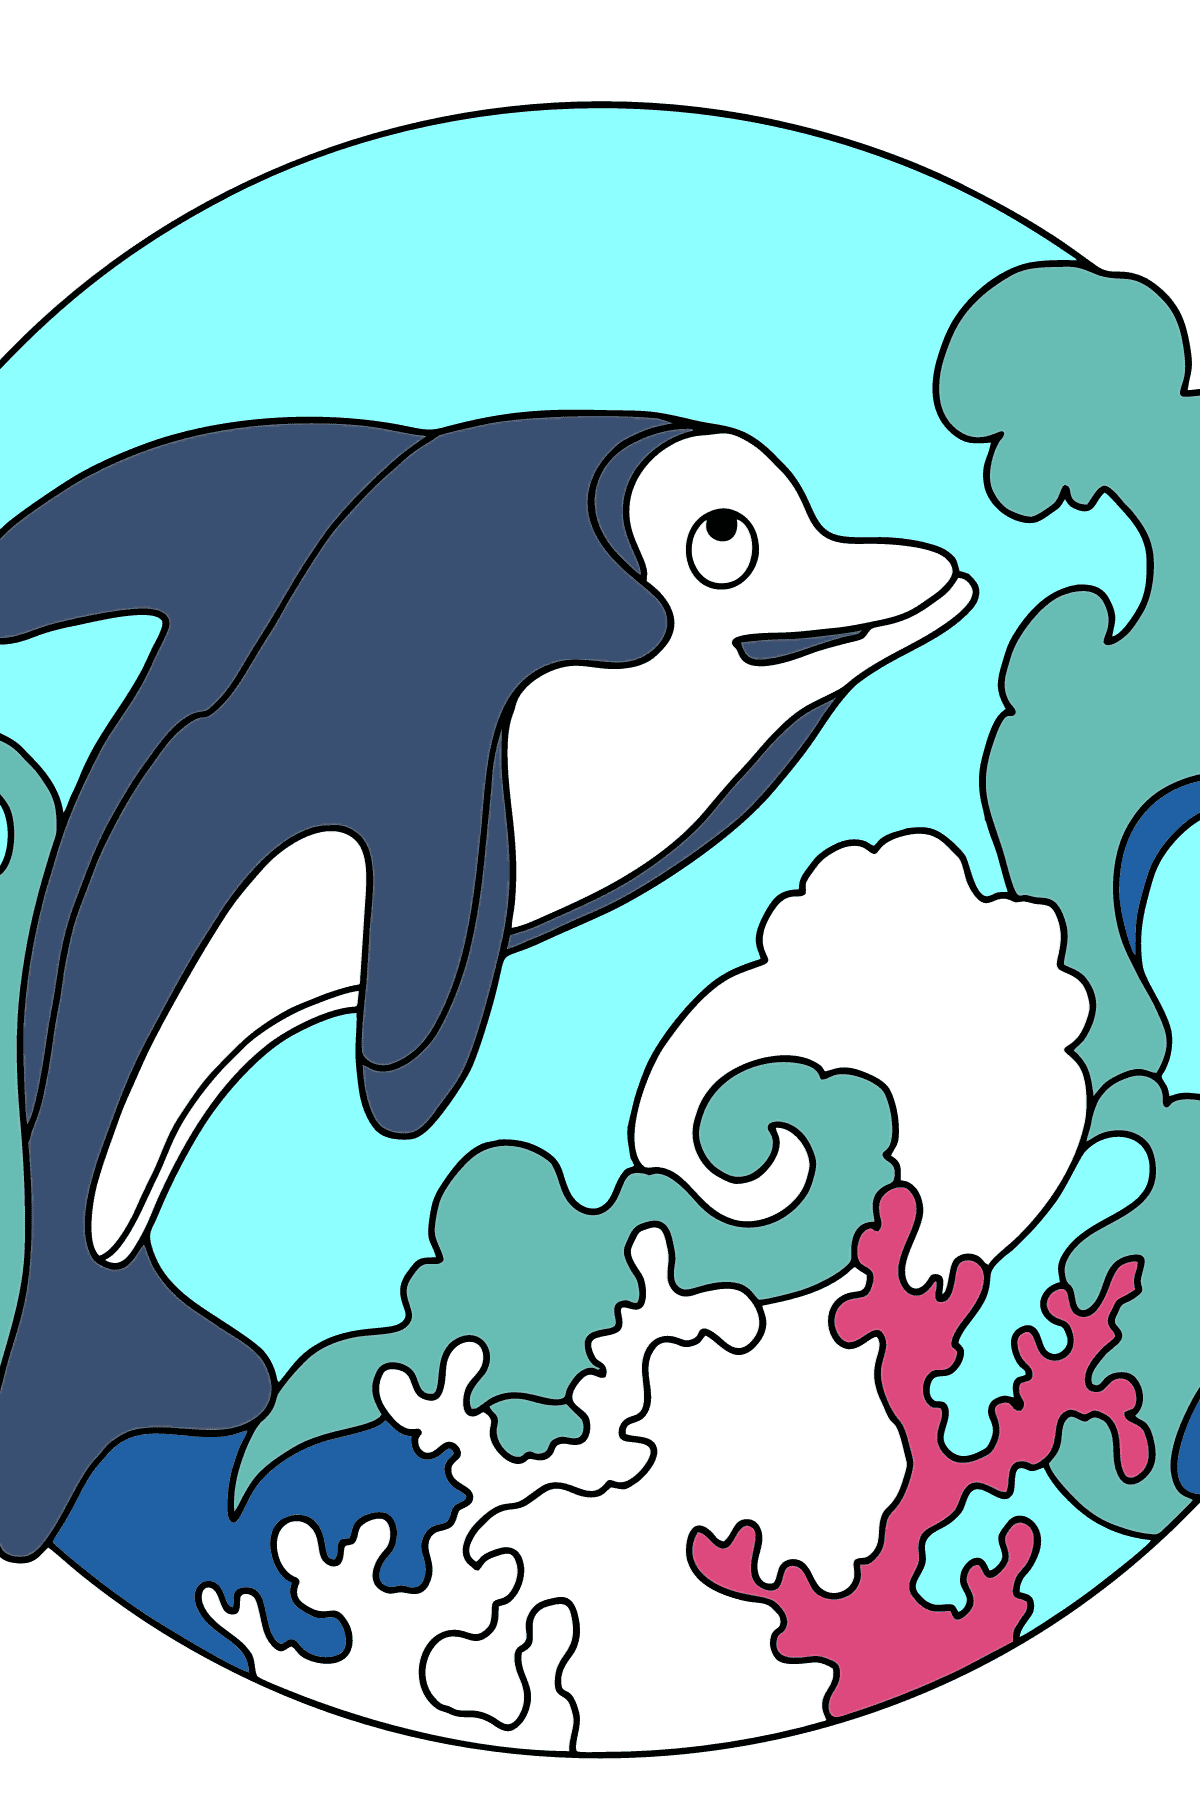 Розмальовка дельфіна для дітей - Розмальовки для дітей